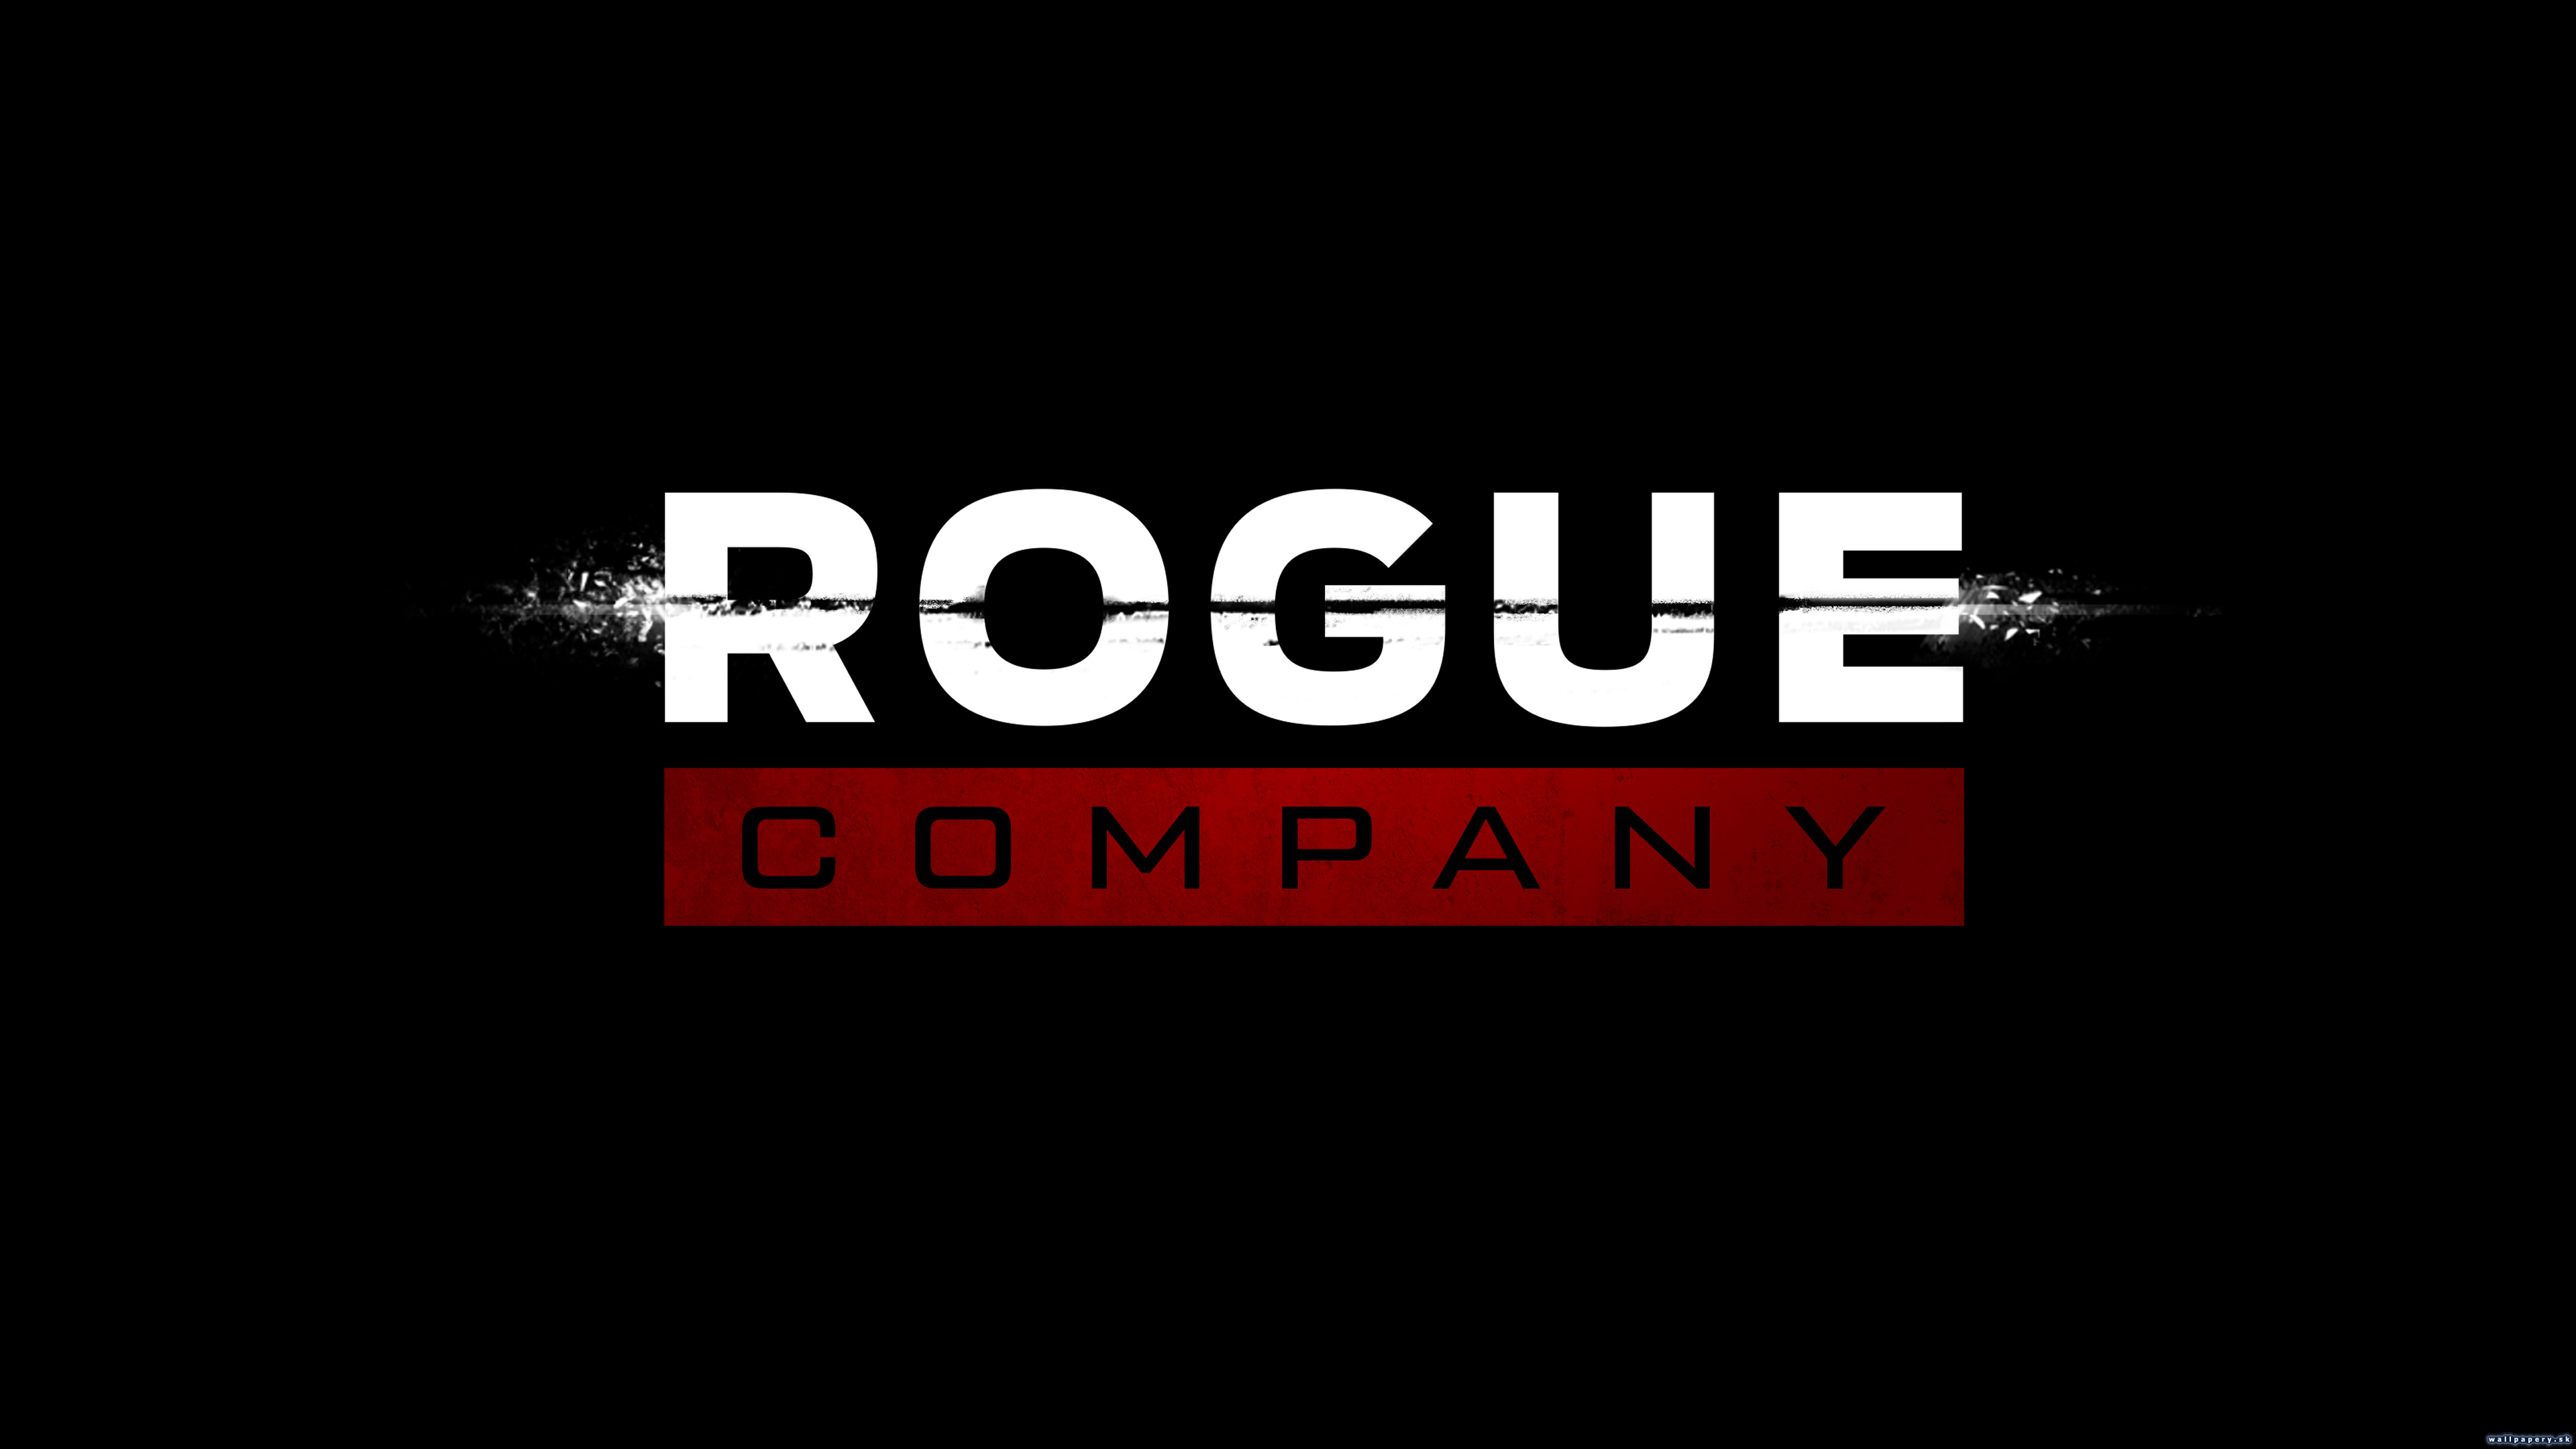 Rogue Company - wallpaper 3